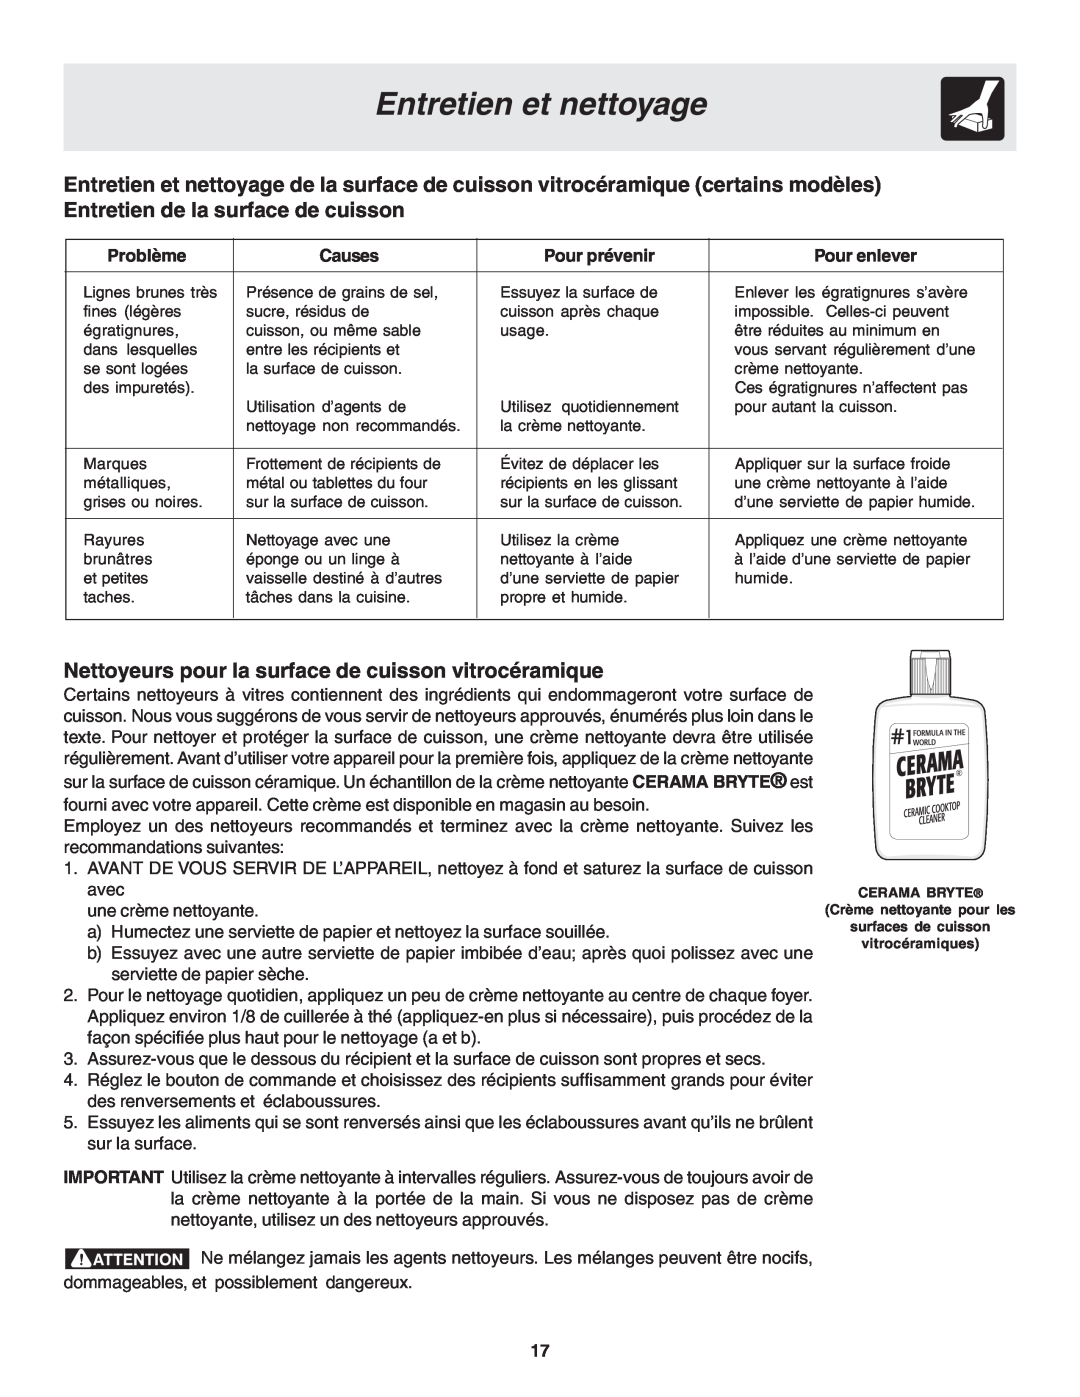 Frigidaire 318200879 manual Entretien et nettoyage, Nettoyeurs pour la surface de cuisson vitrocéramique, Problème, Causes 